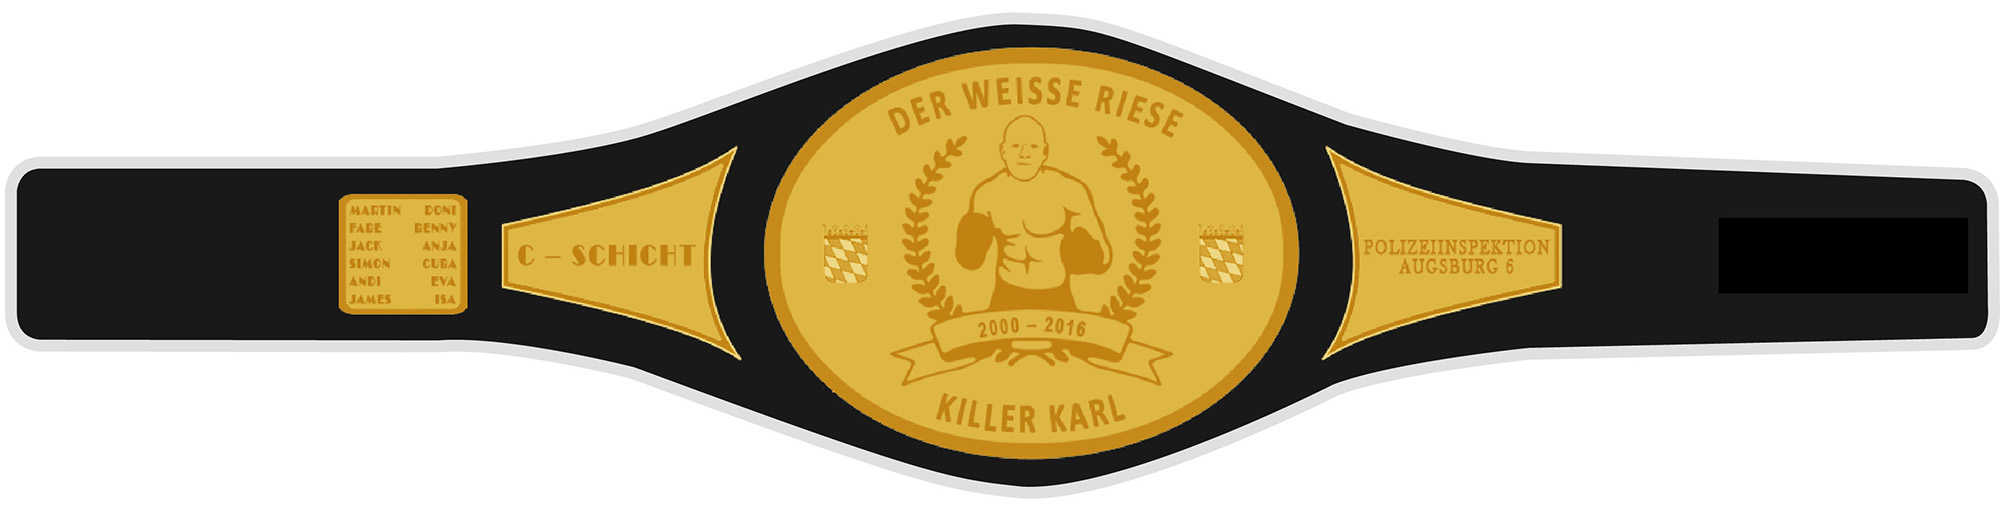 Killer Karl Champion Grtel - Polizei Augsburg Abschiedsgeschenk